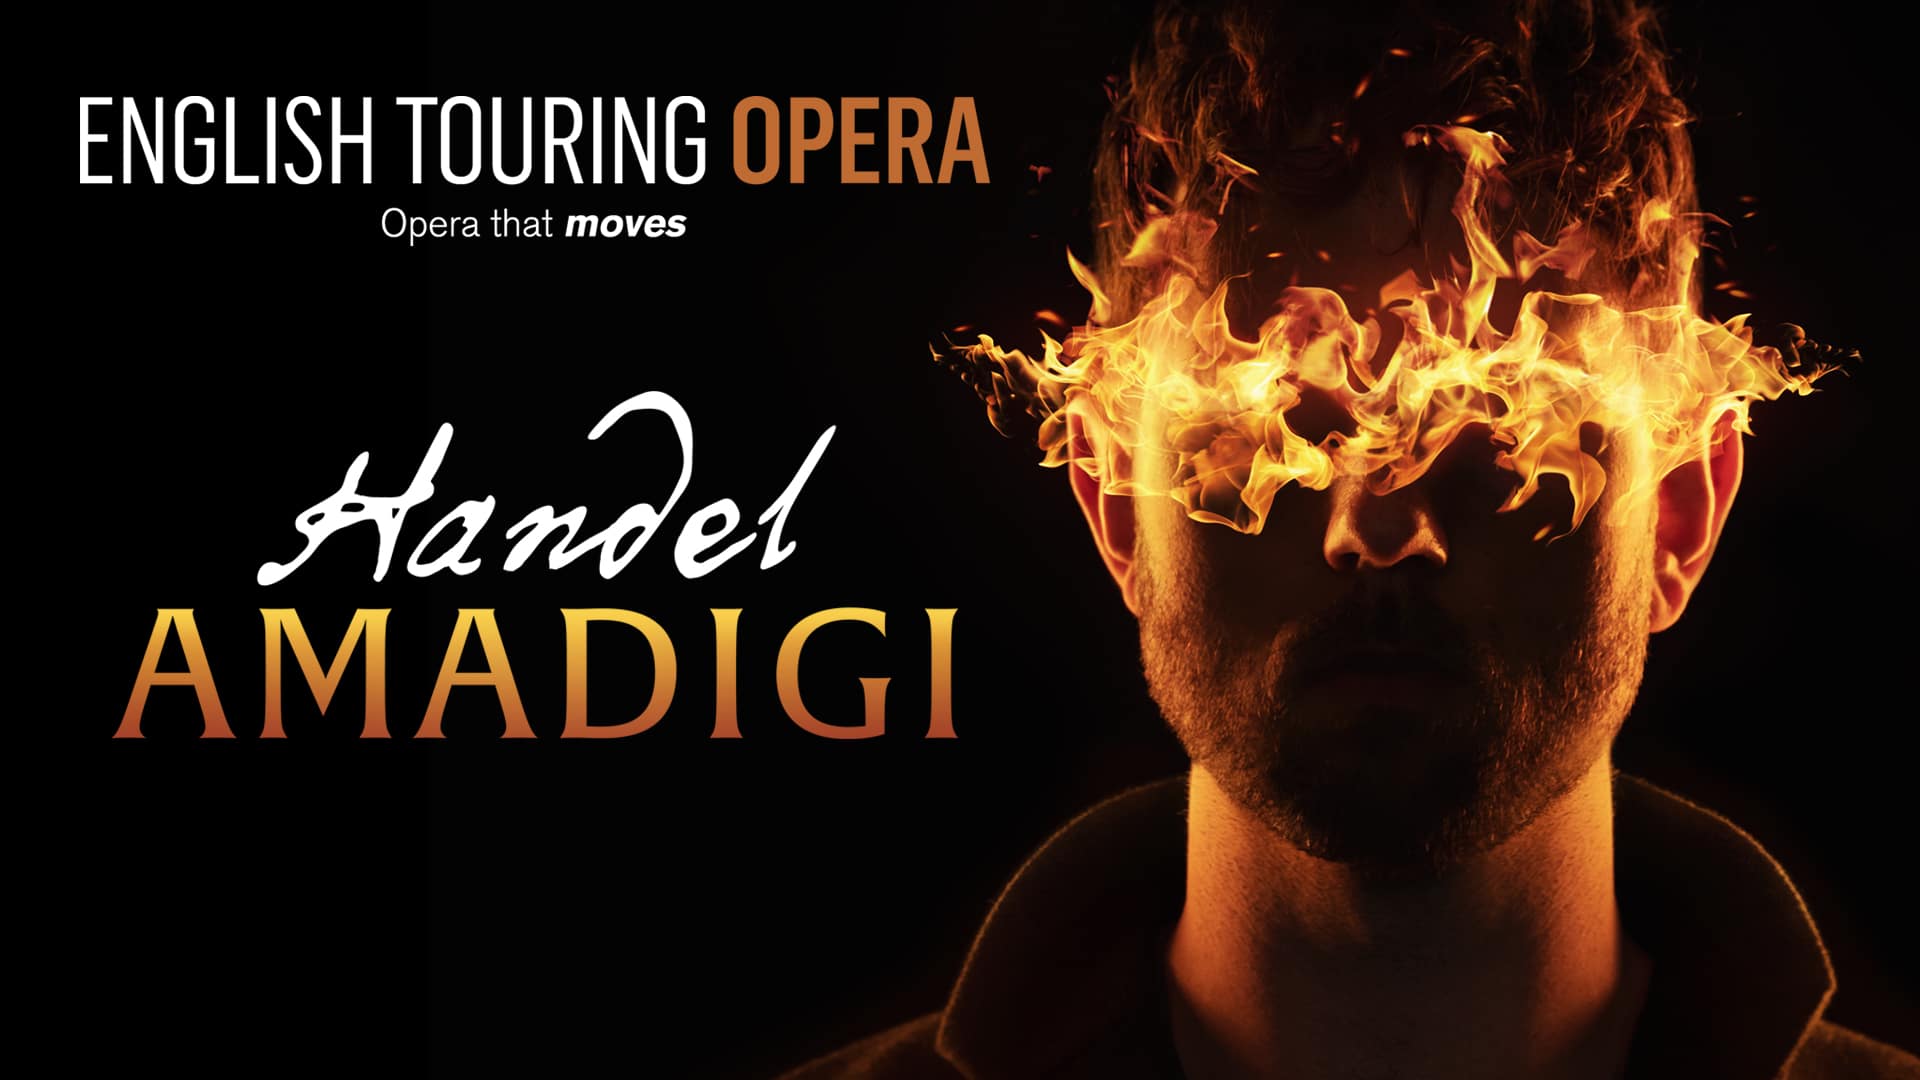 English Touring Opera: Amadigi by Handel